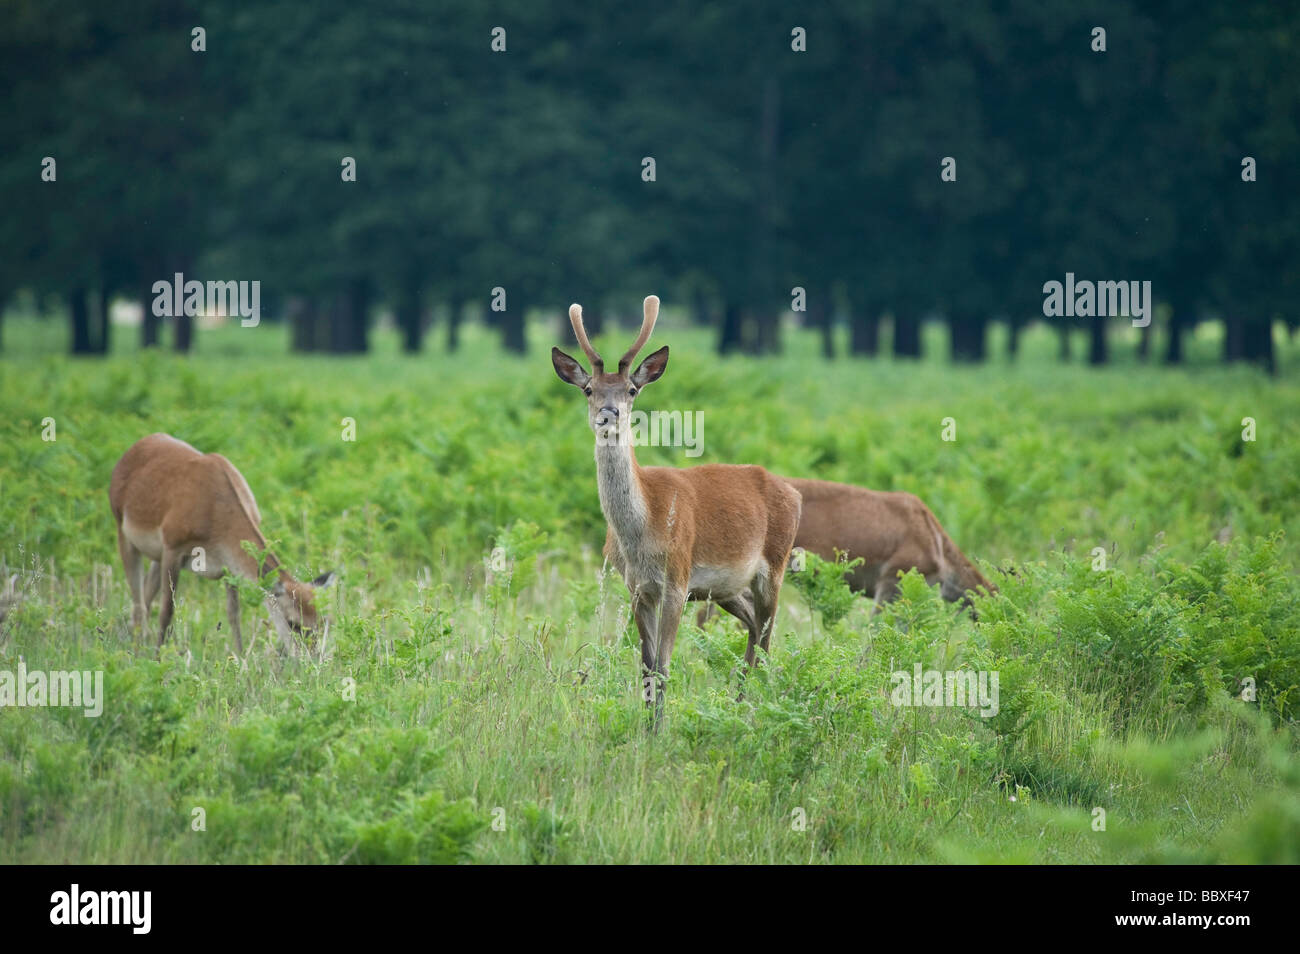 Young deer in Bushy Park, Surrey, UK Stock Photo